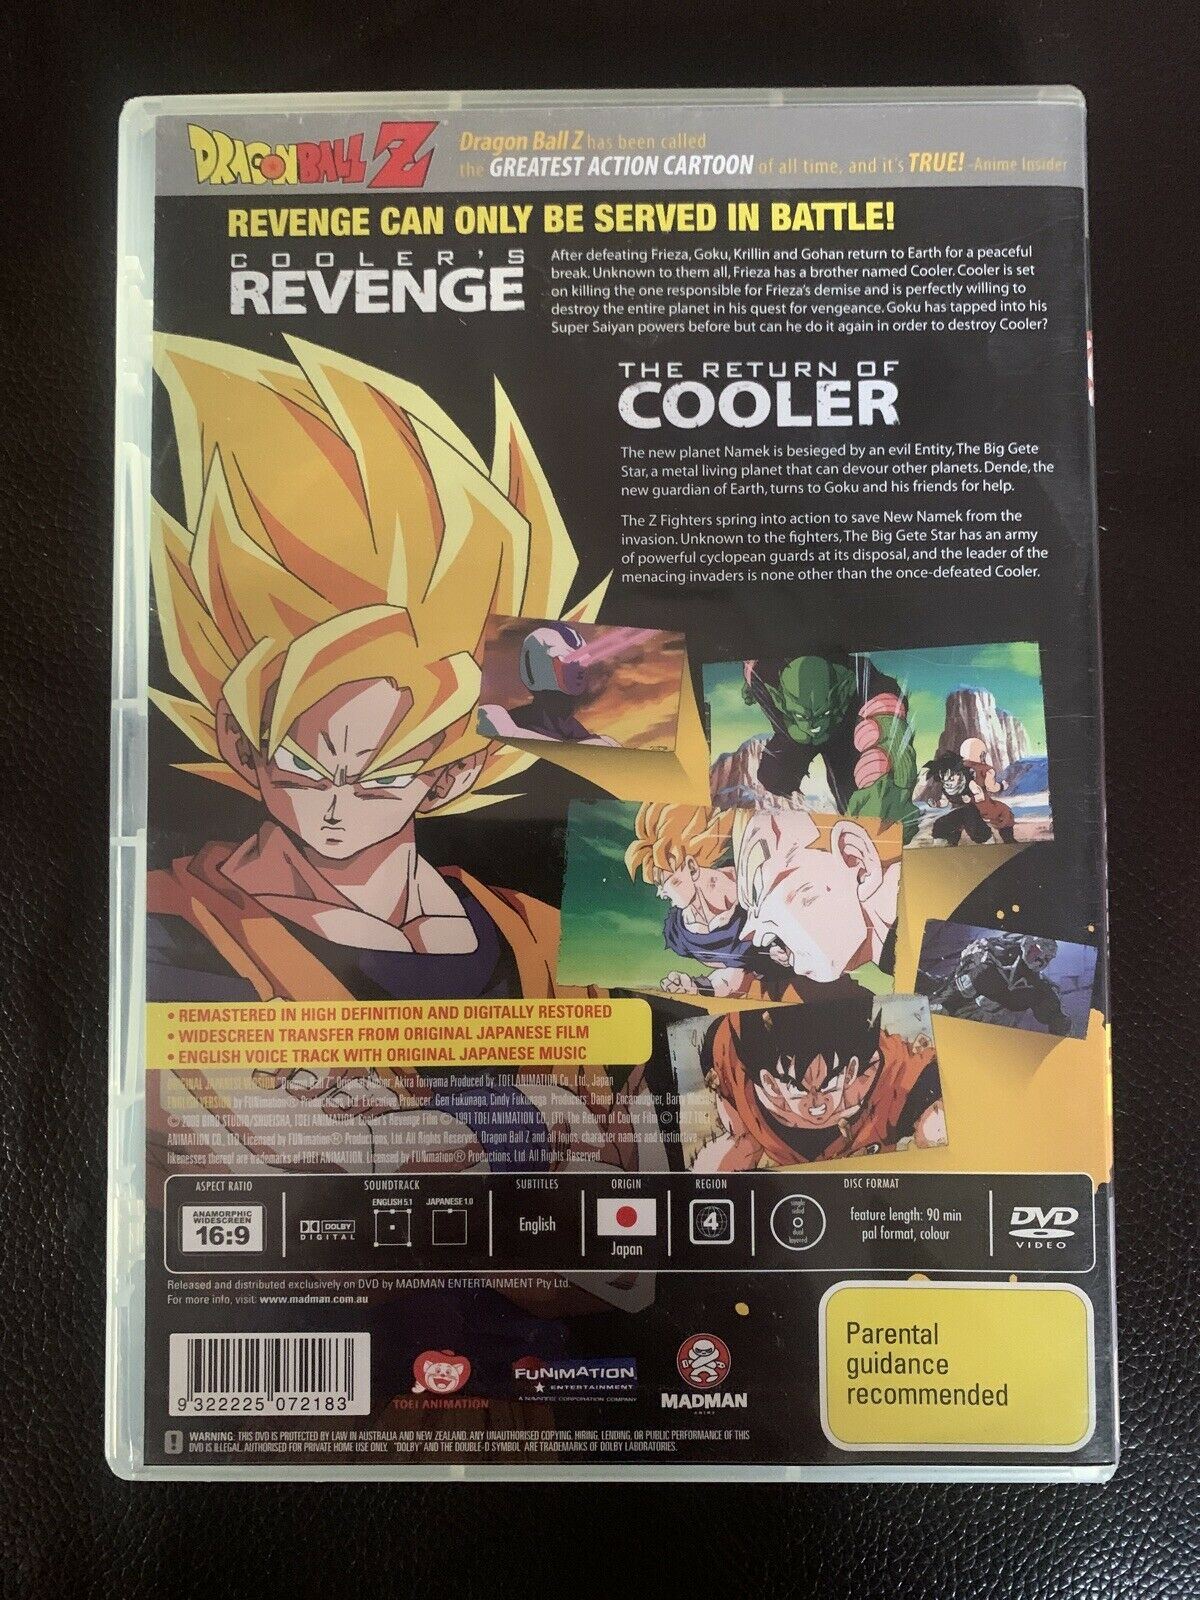 Dragon Ball Z Cooler's Revenge / The Return of Cooler (DVD) Region 4